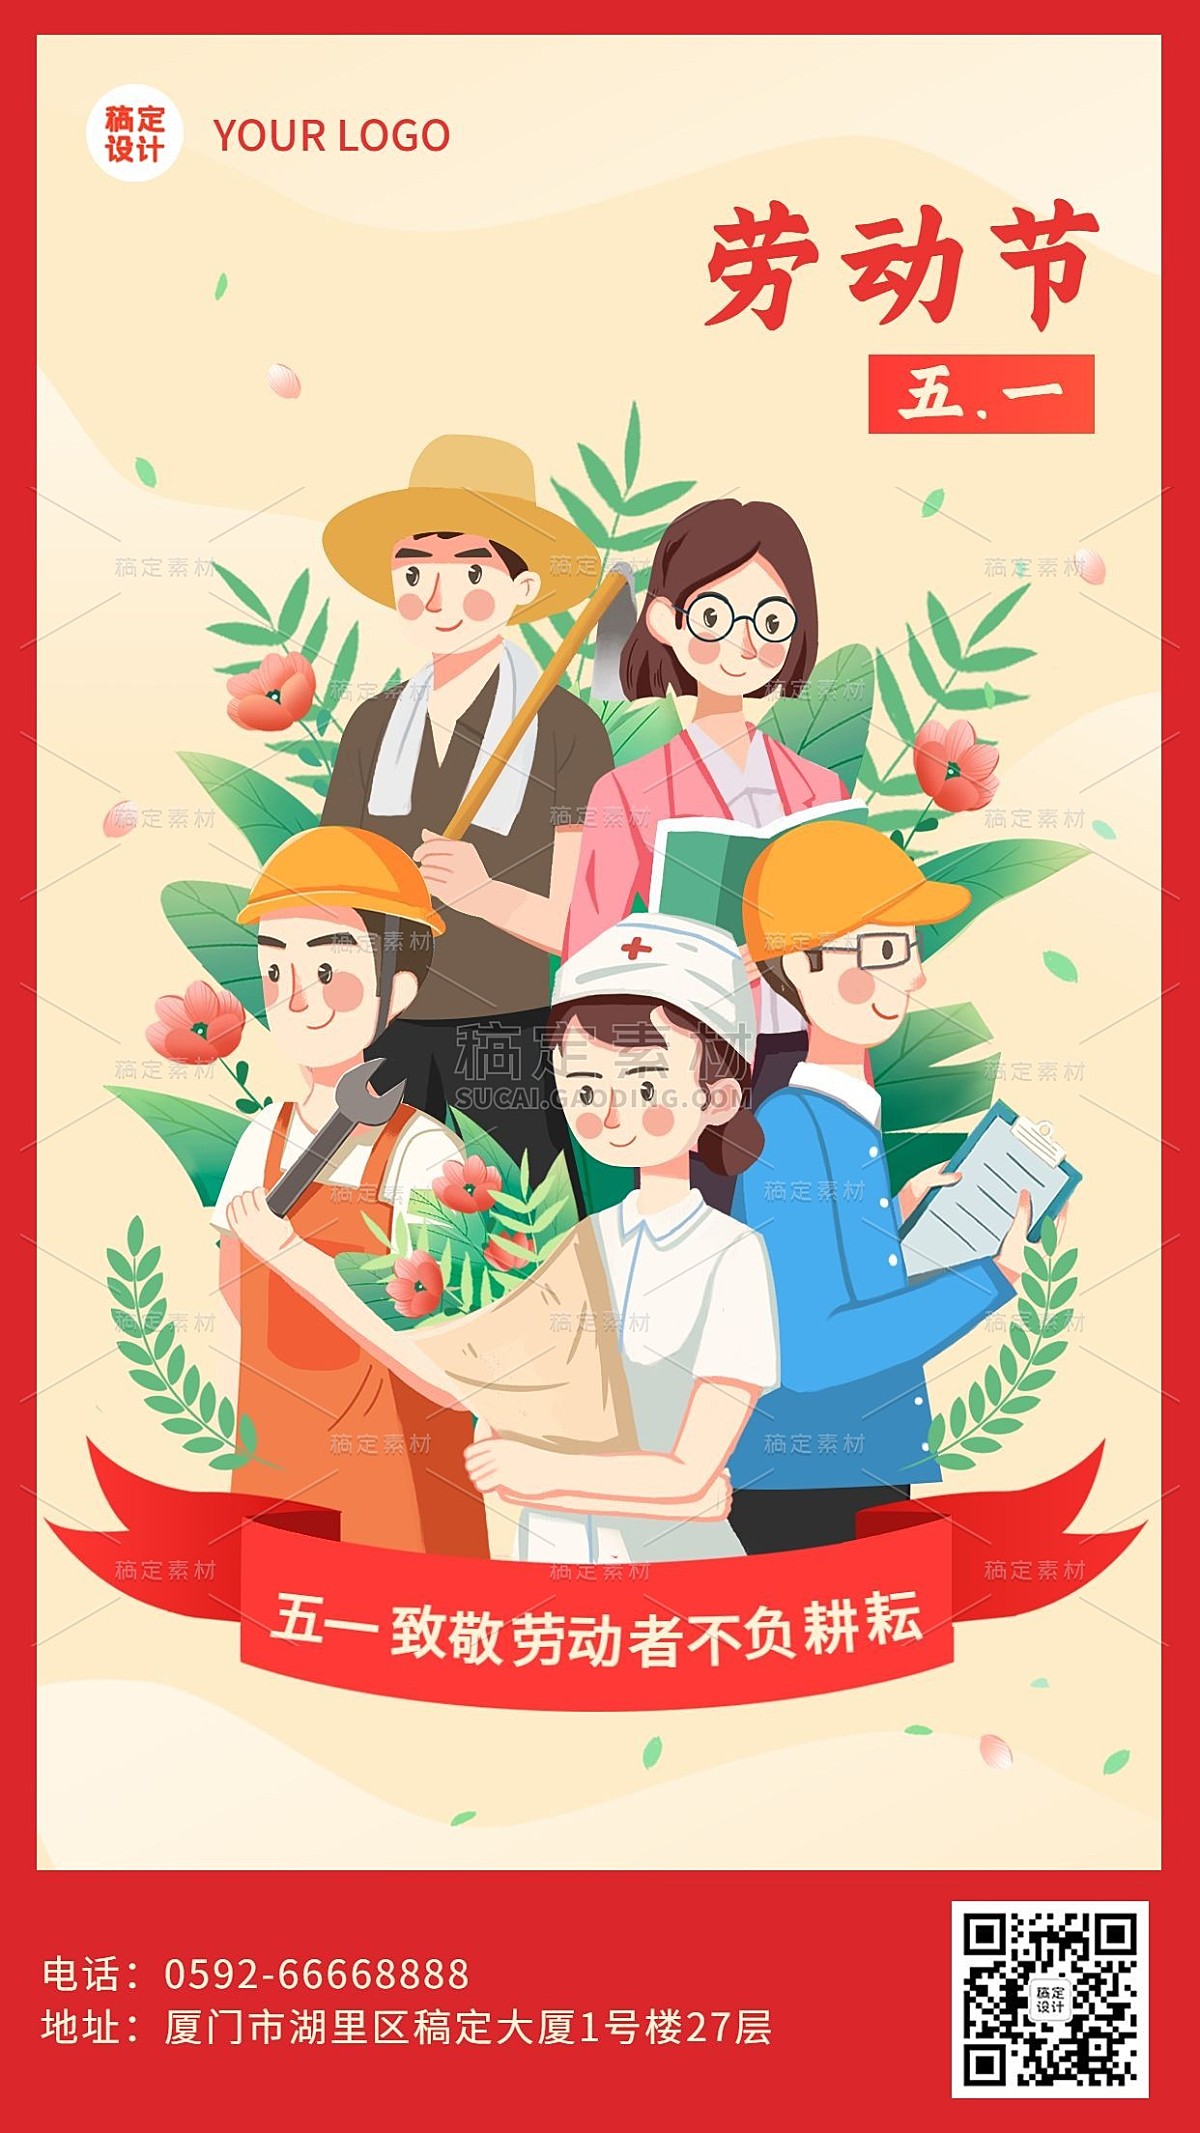 五一劳动节金融保险节日祝福创意插画海报